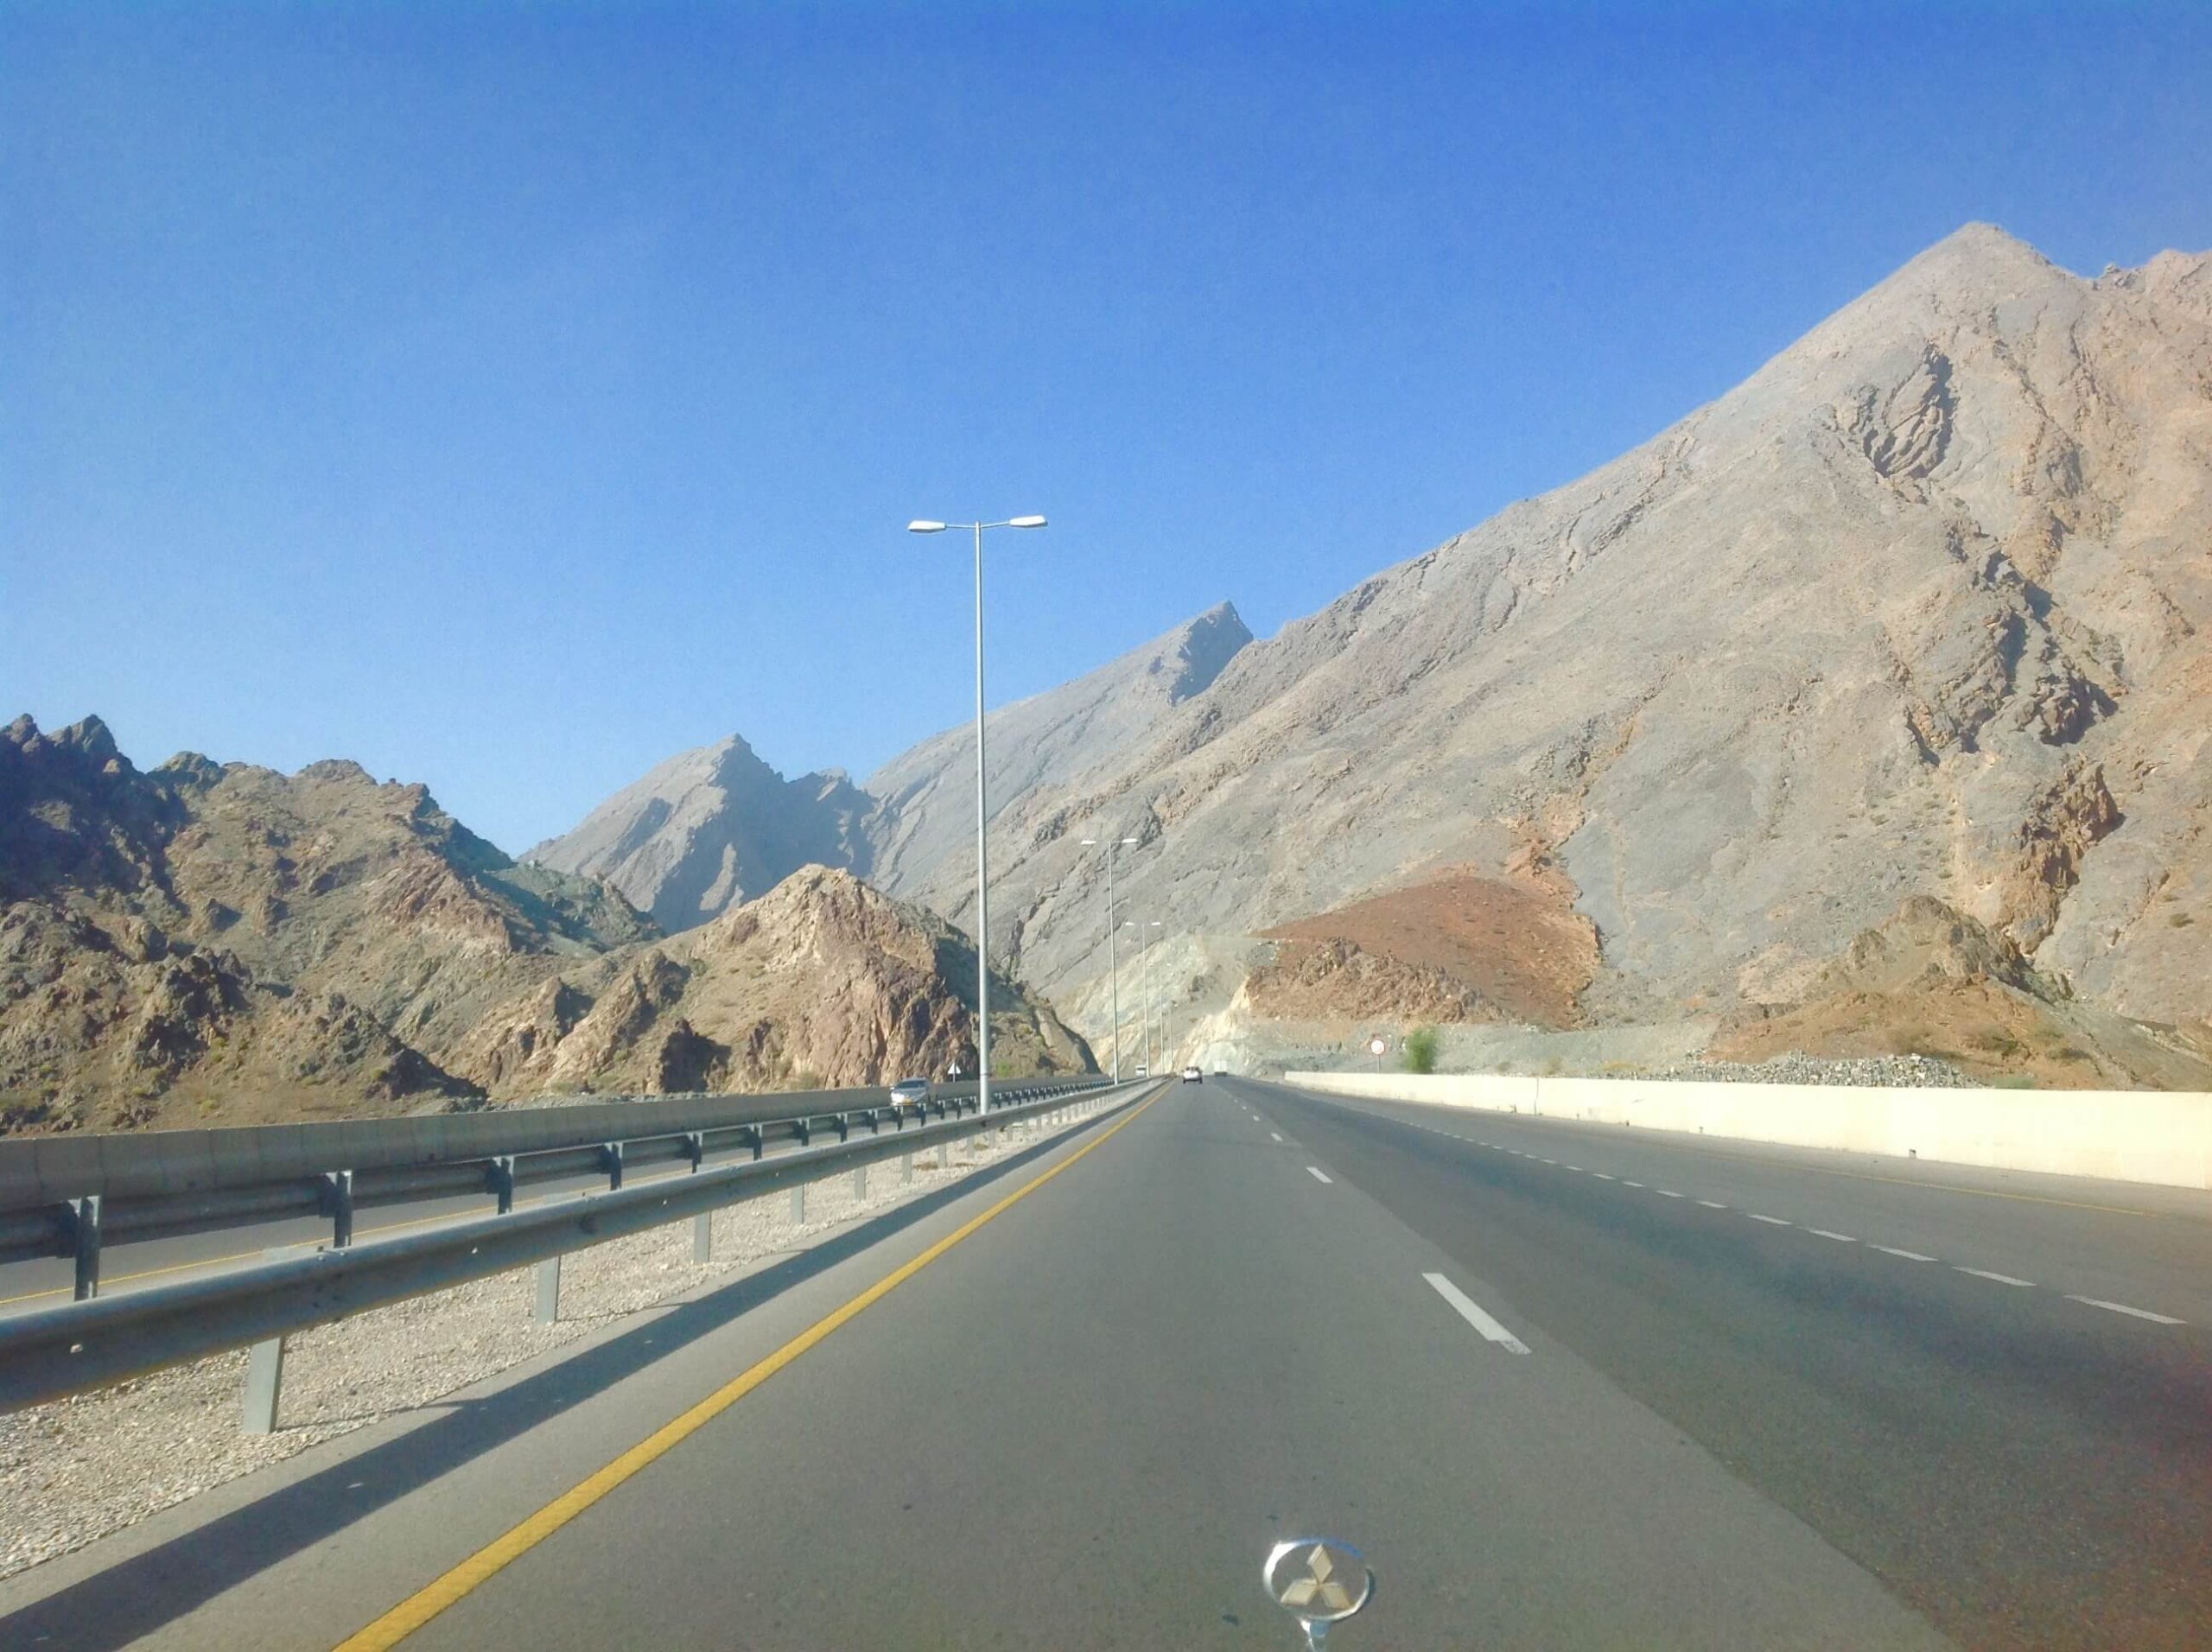 Oman road